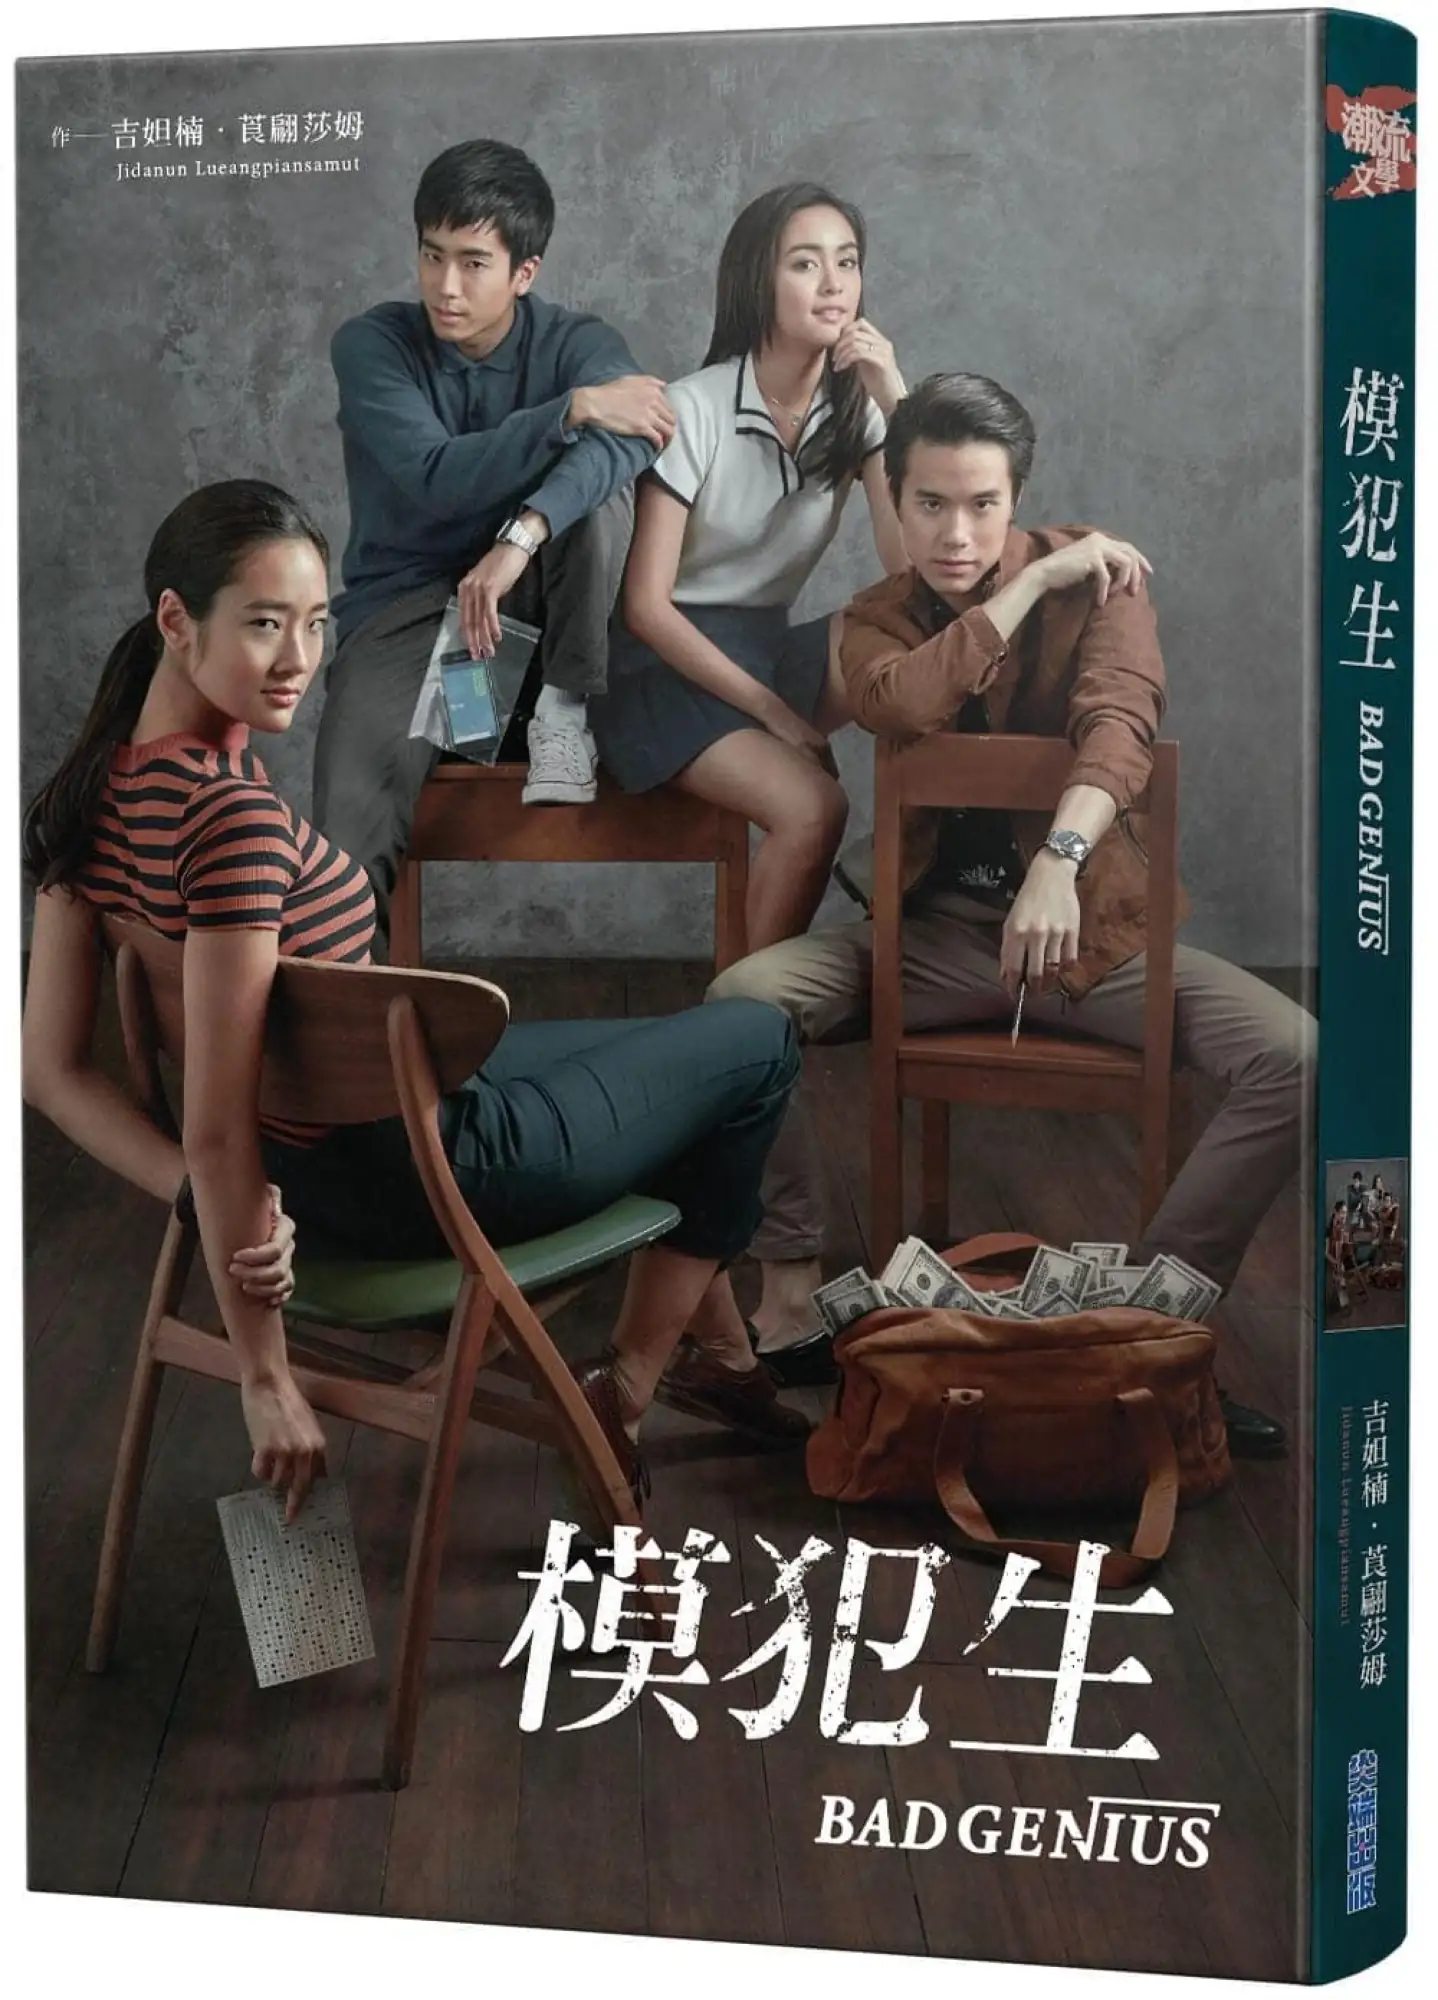 泰国电影《天才枪手》将推出《天才枪手》影集版，并且小说出了繁体中文版（图片来源：博客来）